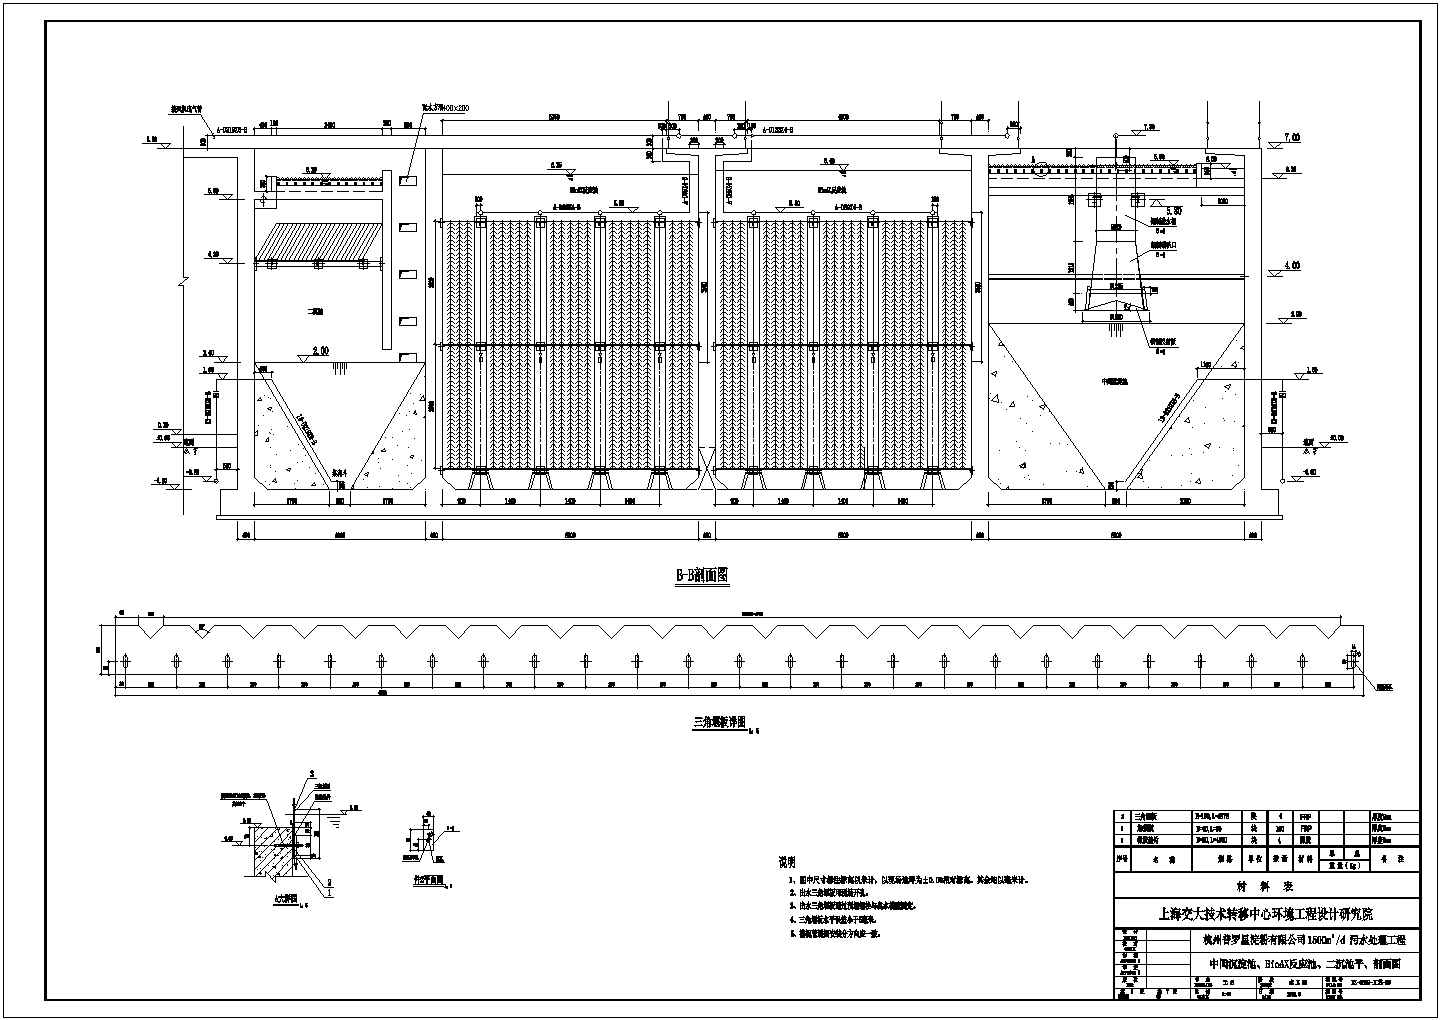 杭州某淀粉厂污水处理站工艺全套CAD中间沉淀池BioAX反应池二沉池平CAD环保剖面图